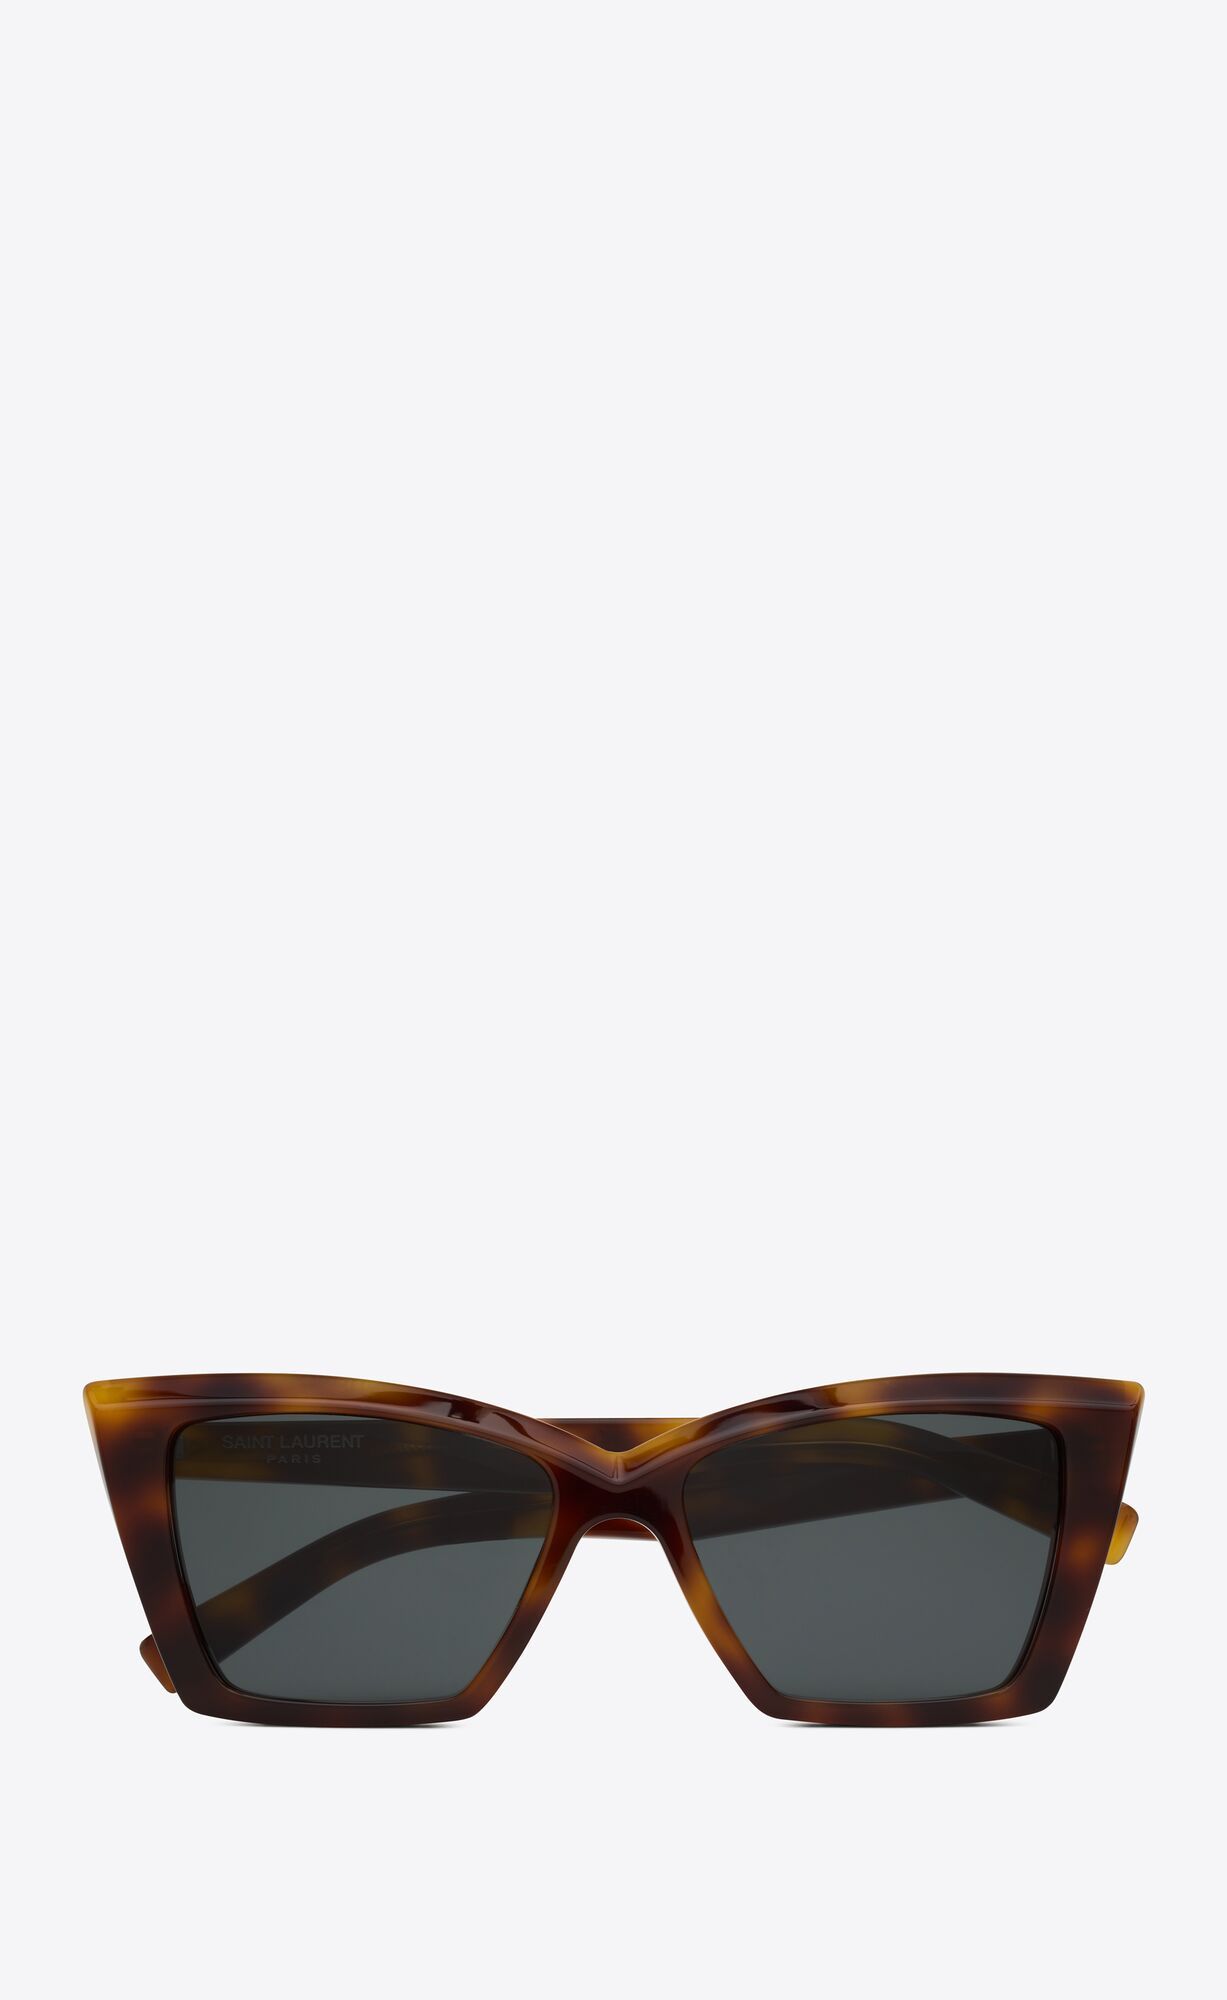 squared cat-eye sunglasses with tortoiseshell acetate frames and nylon lenses. | Saint Laurent Inc. (Global)